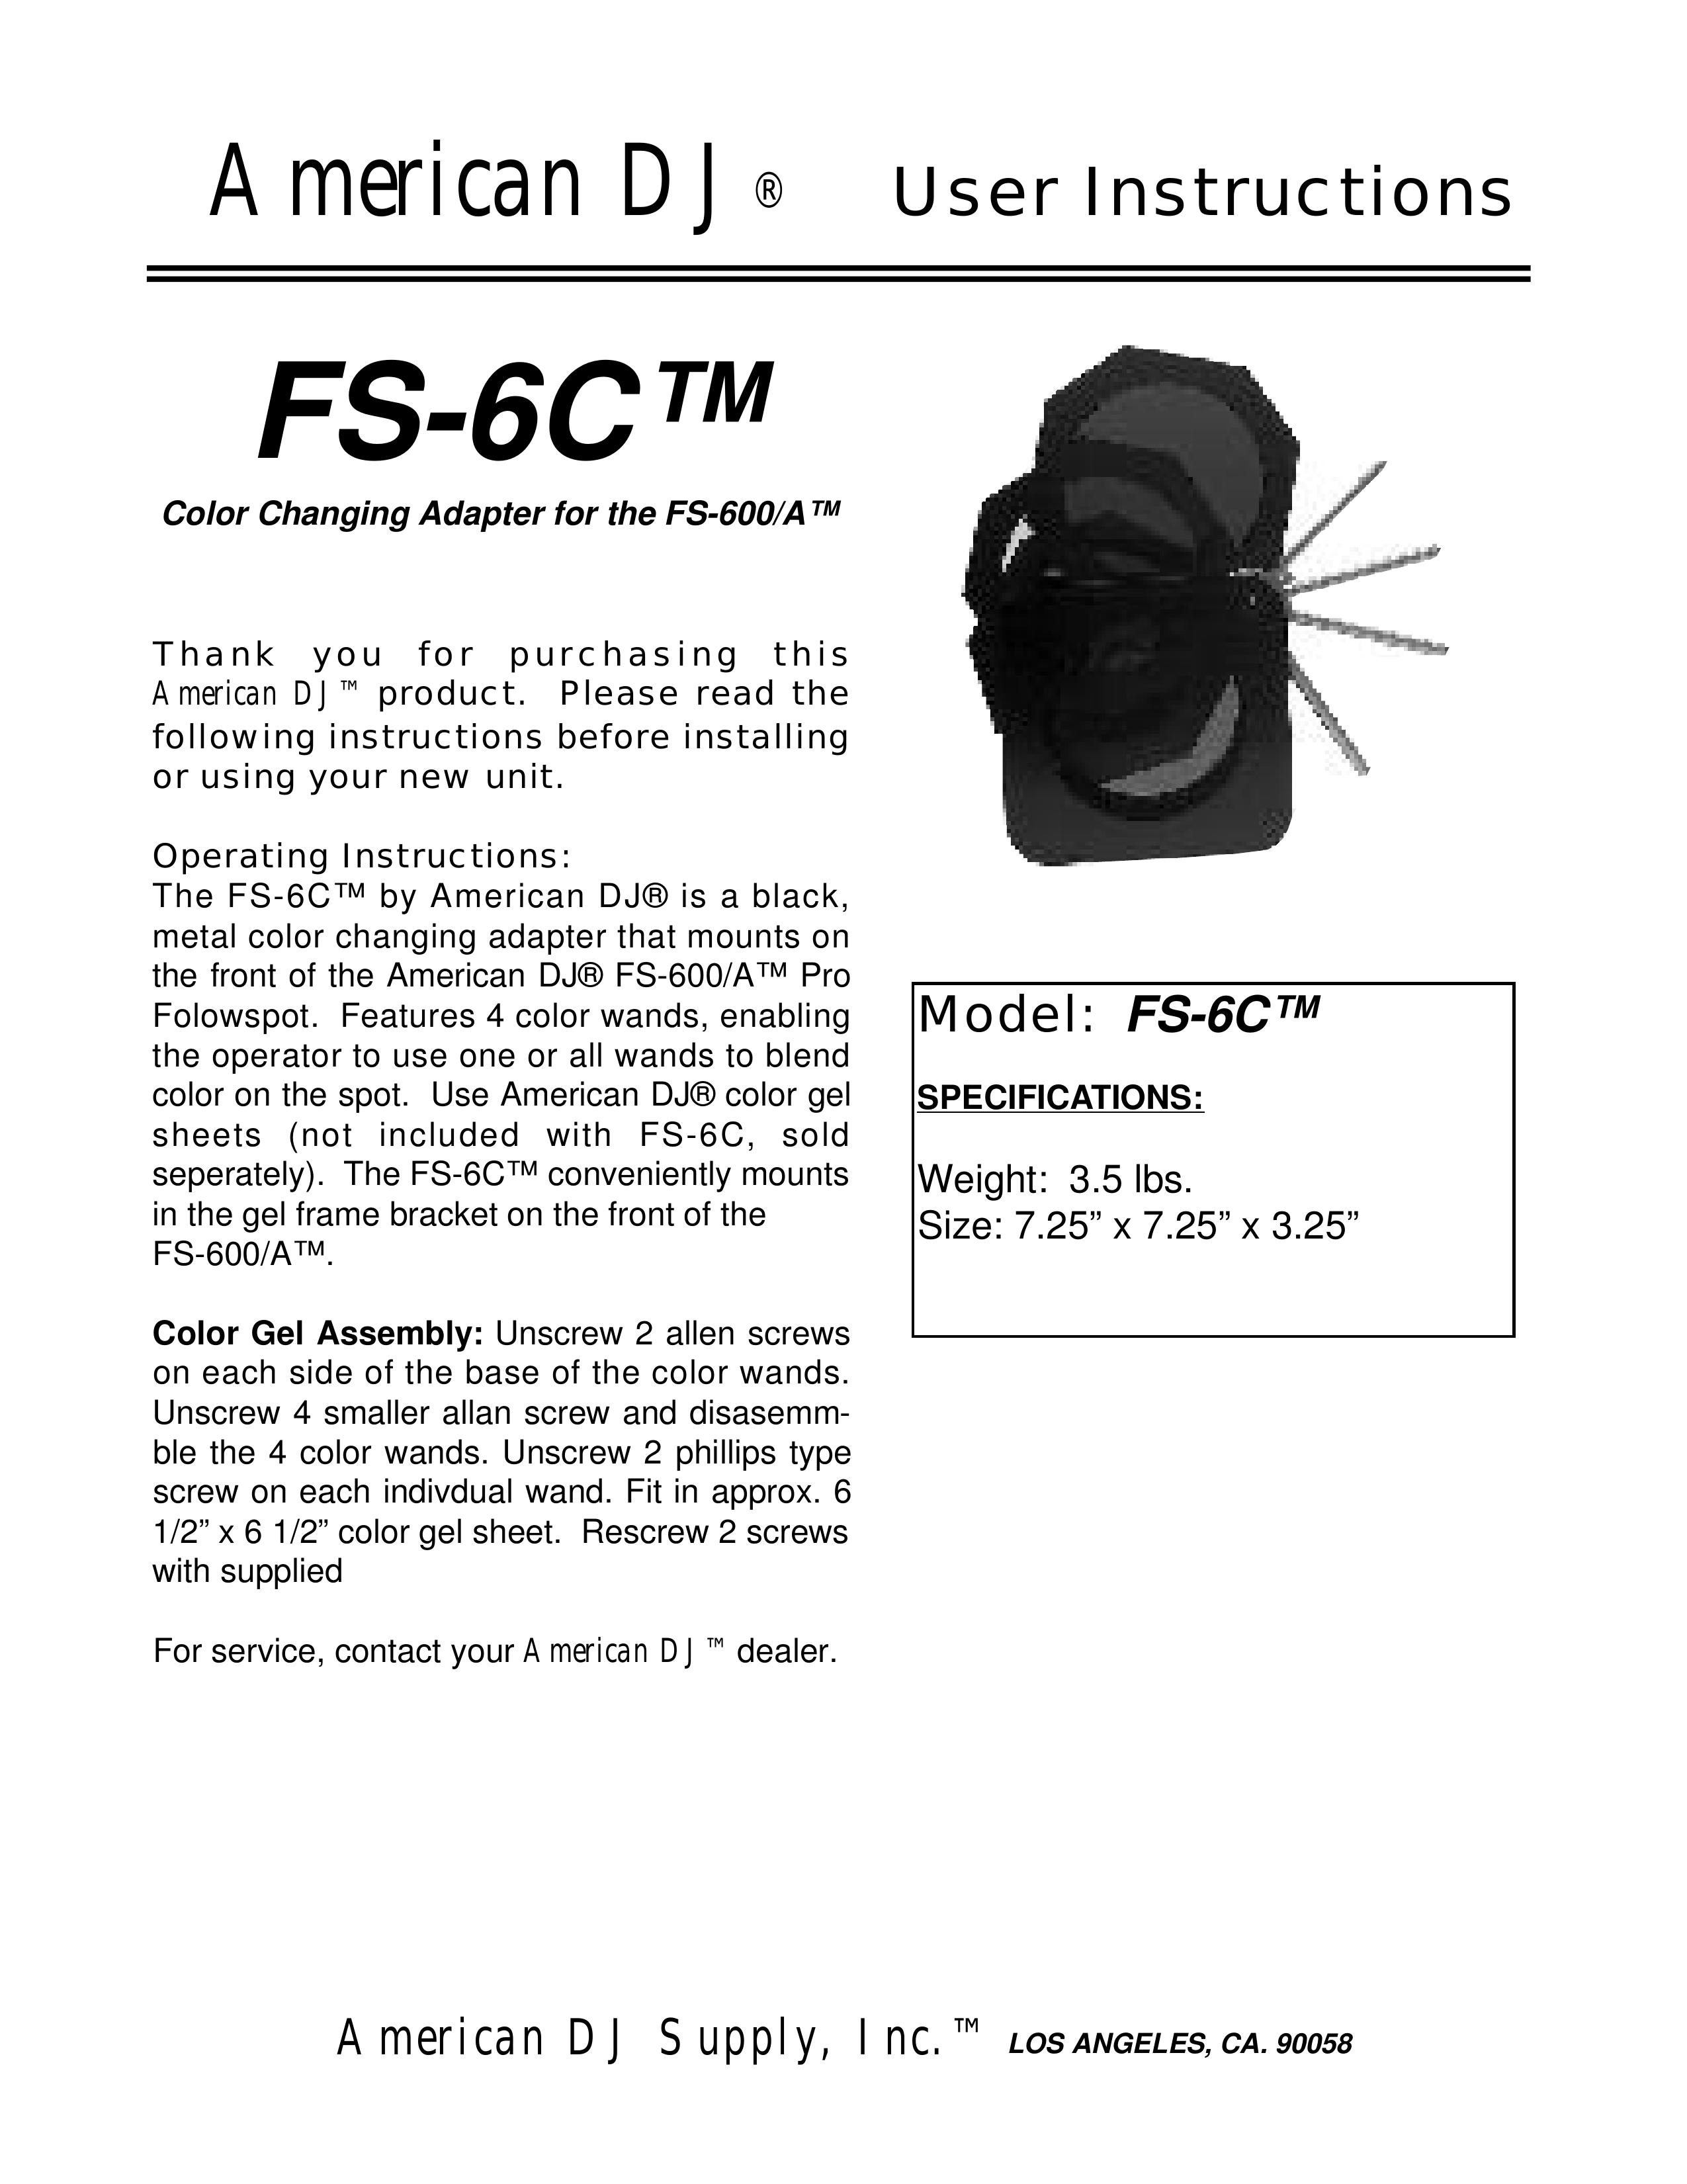 American DJ FS-6C DJ Equipment User Manual